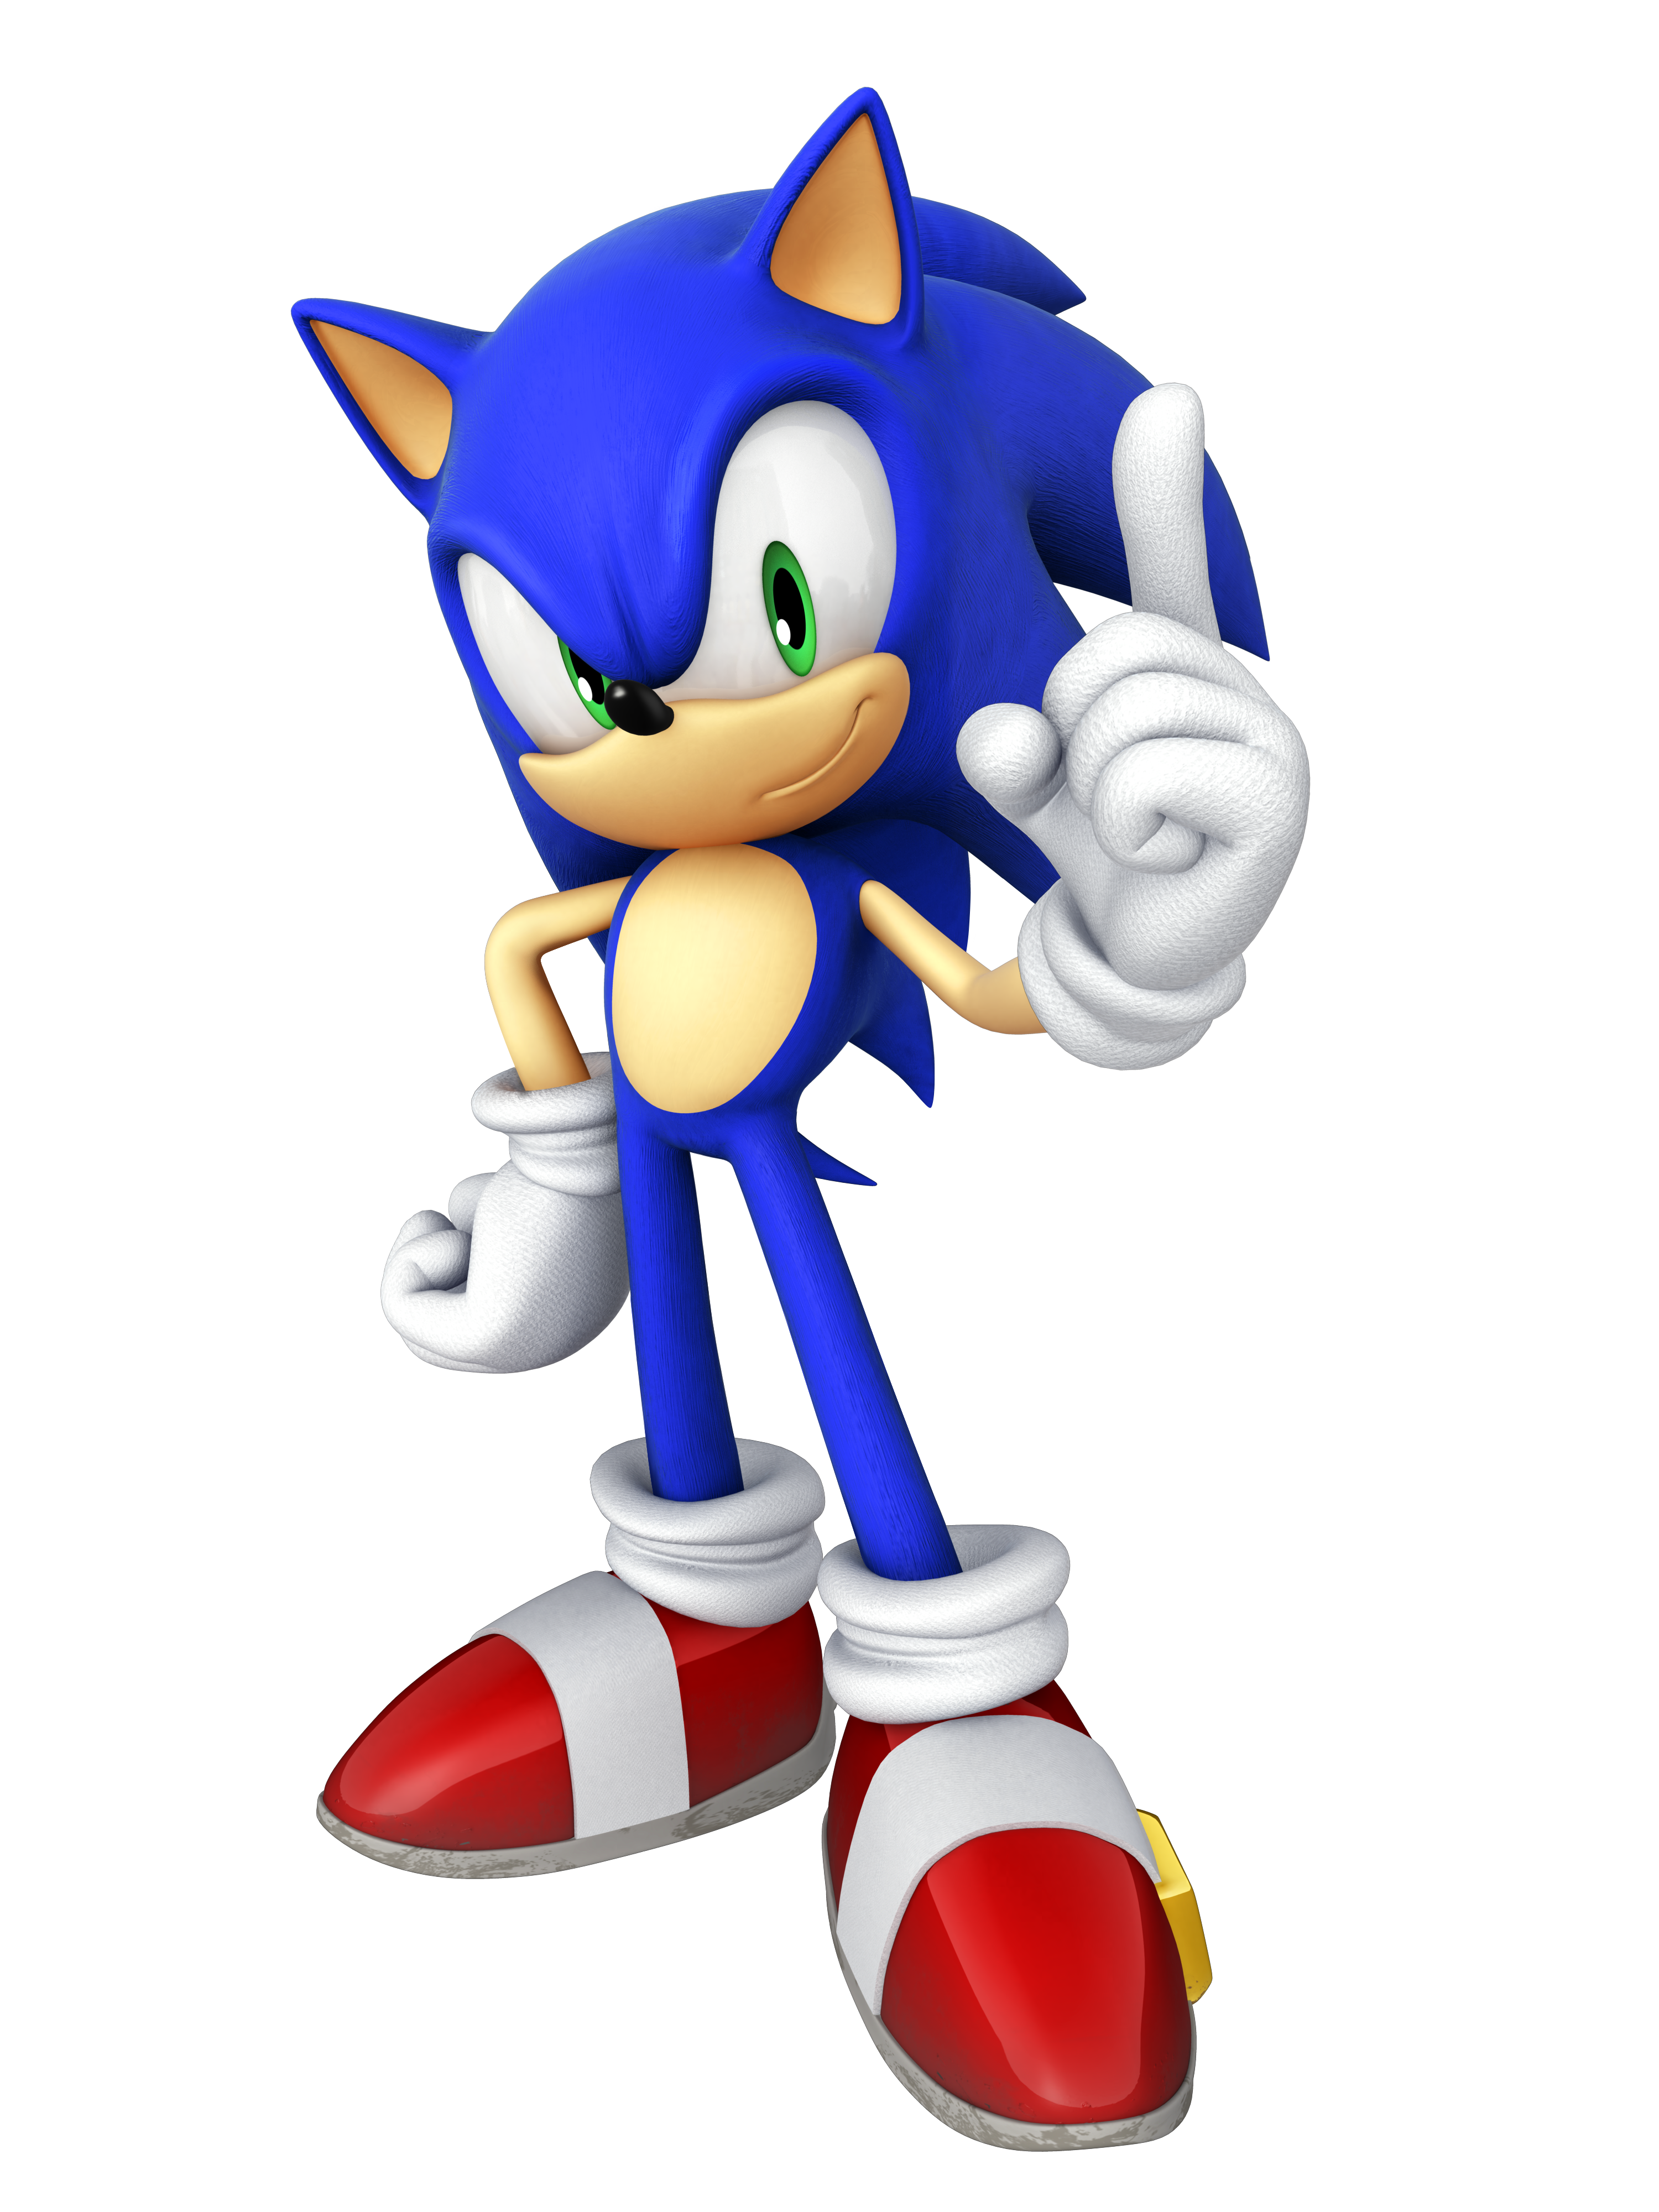 Фотку соника соник. Соник Классик 1993. Соник the Hedgehog. Ёж Соник. Sonic the Hedgehog 1 Соник.